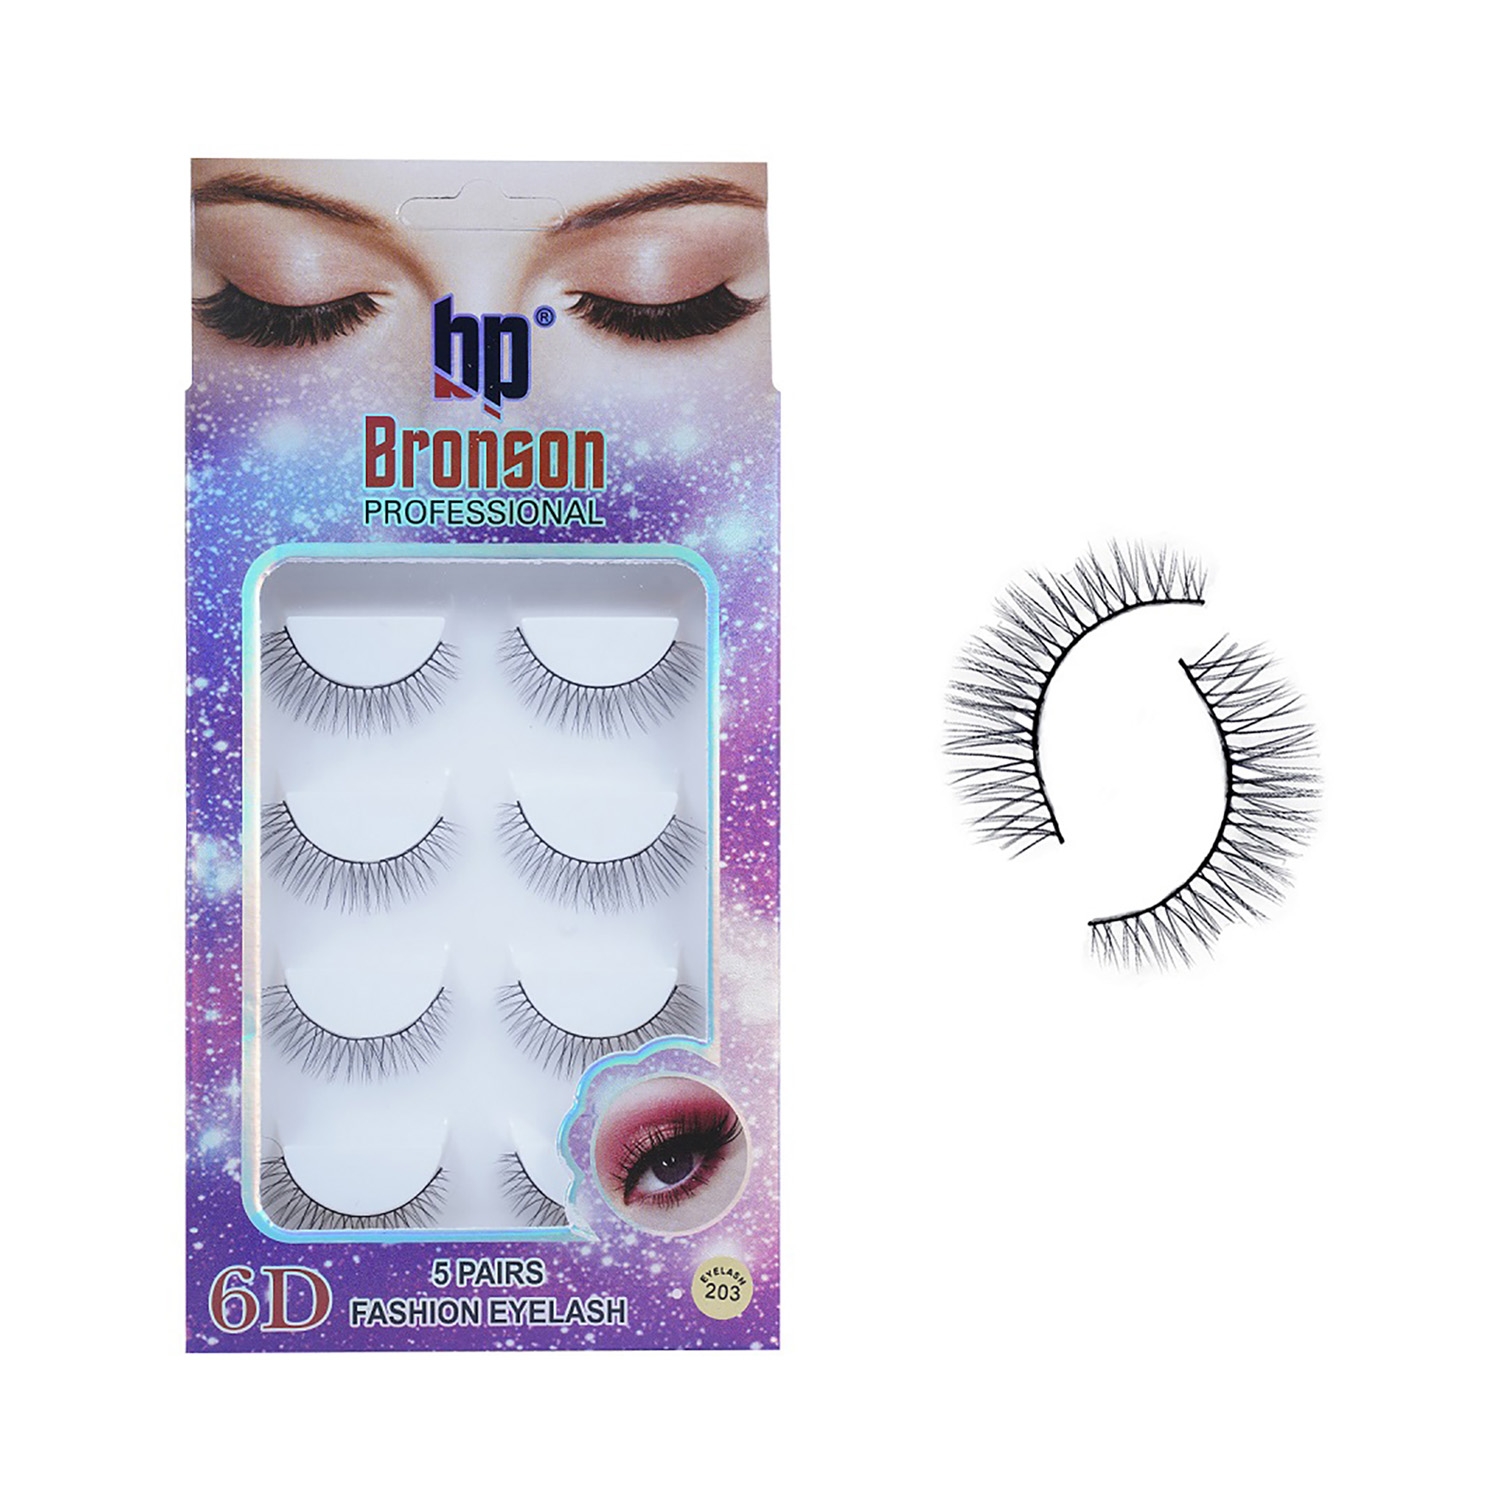 Bronson Professional | Bronson Professional Pair 6D Long & Natural False Eyelashes - 203 - Black (5 Pairs)